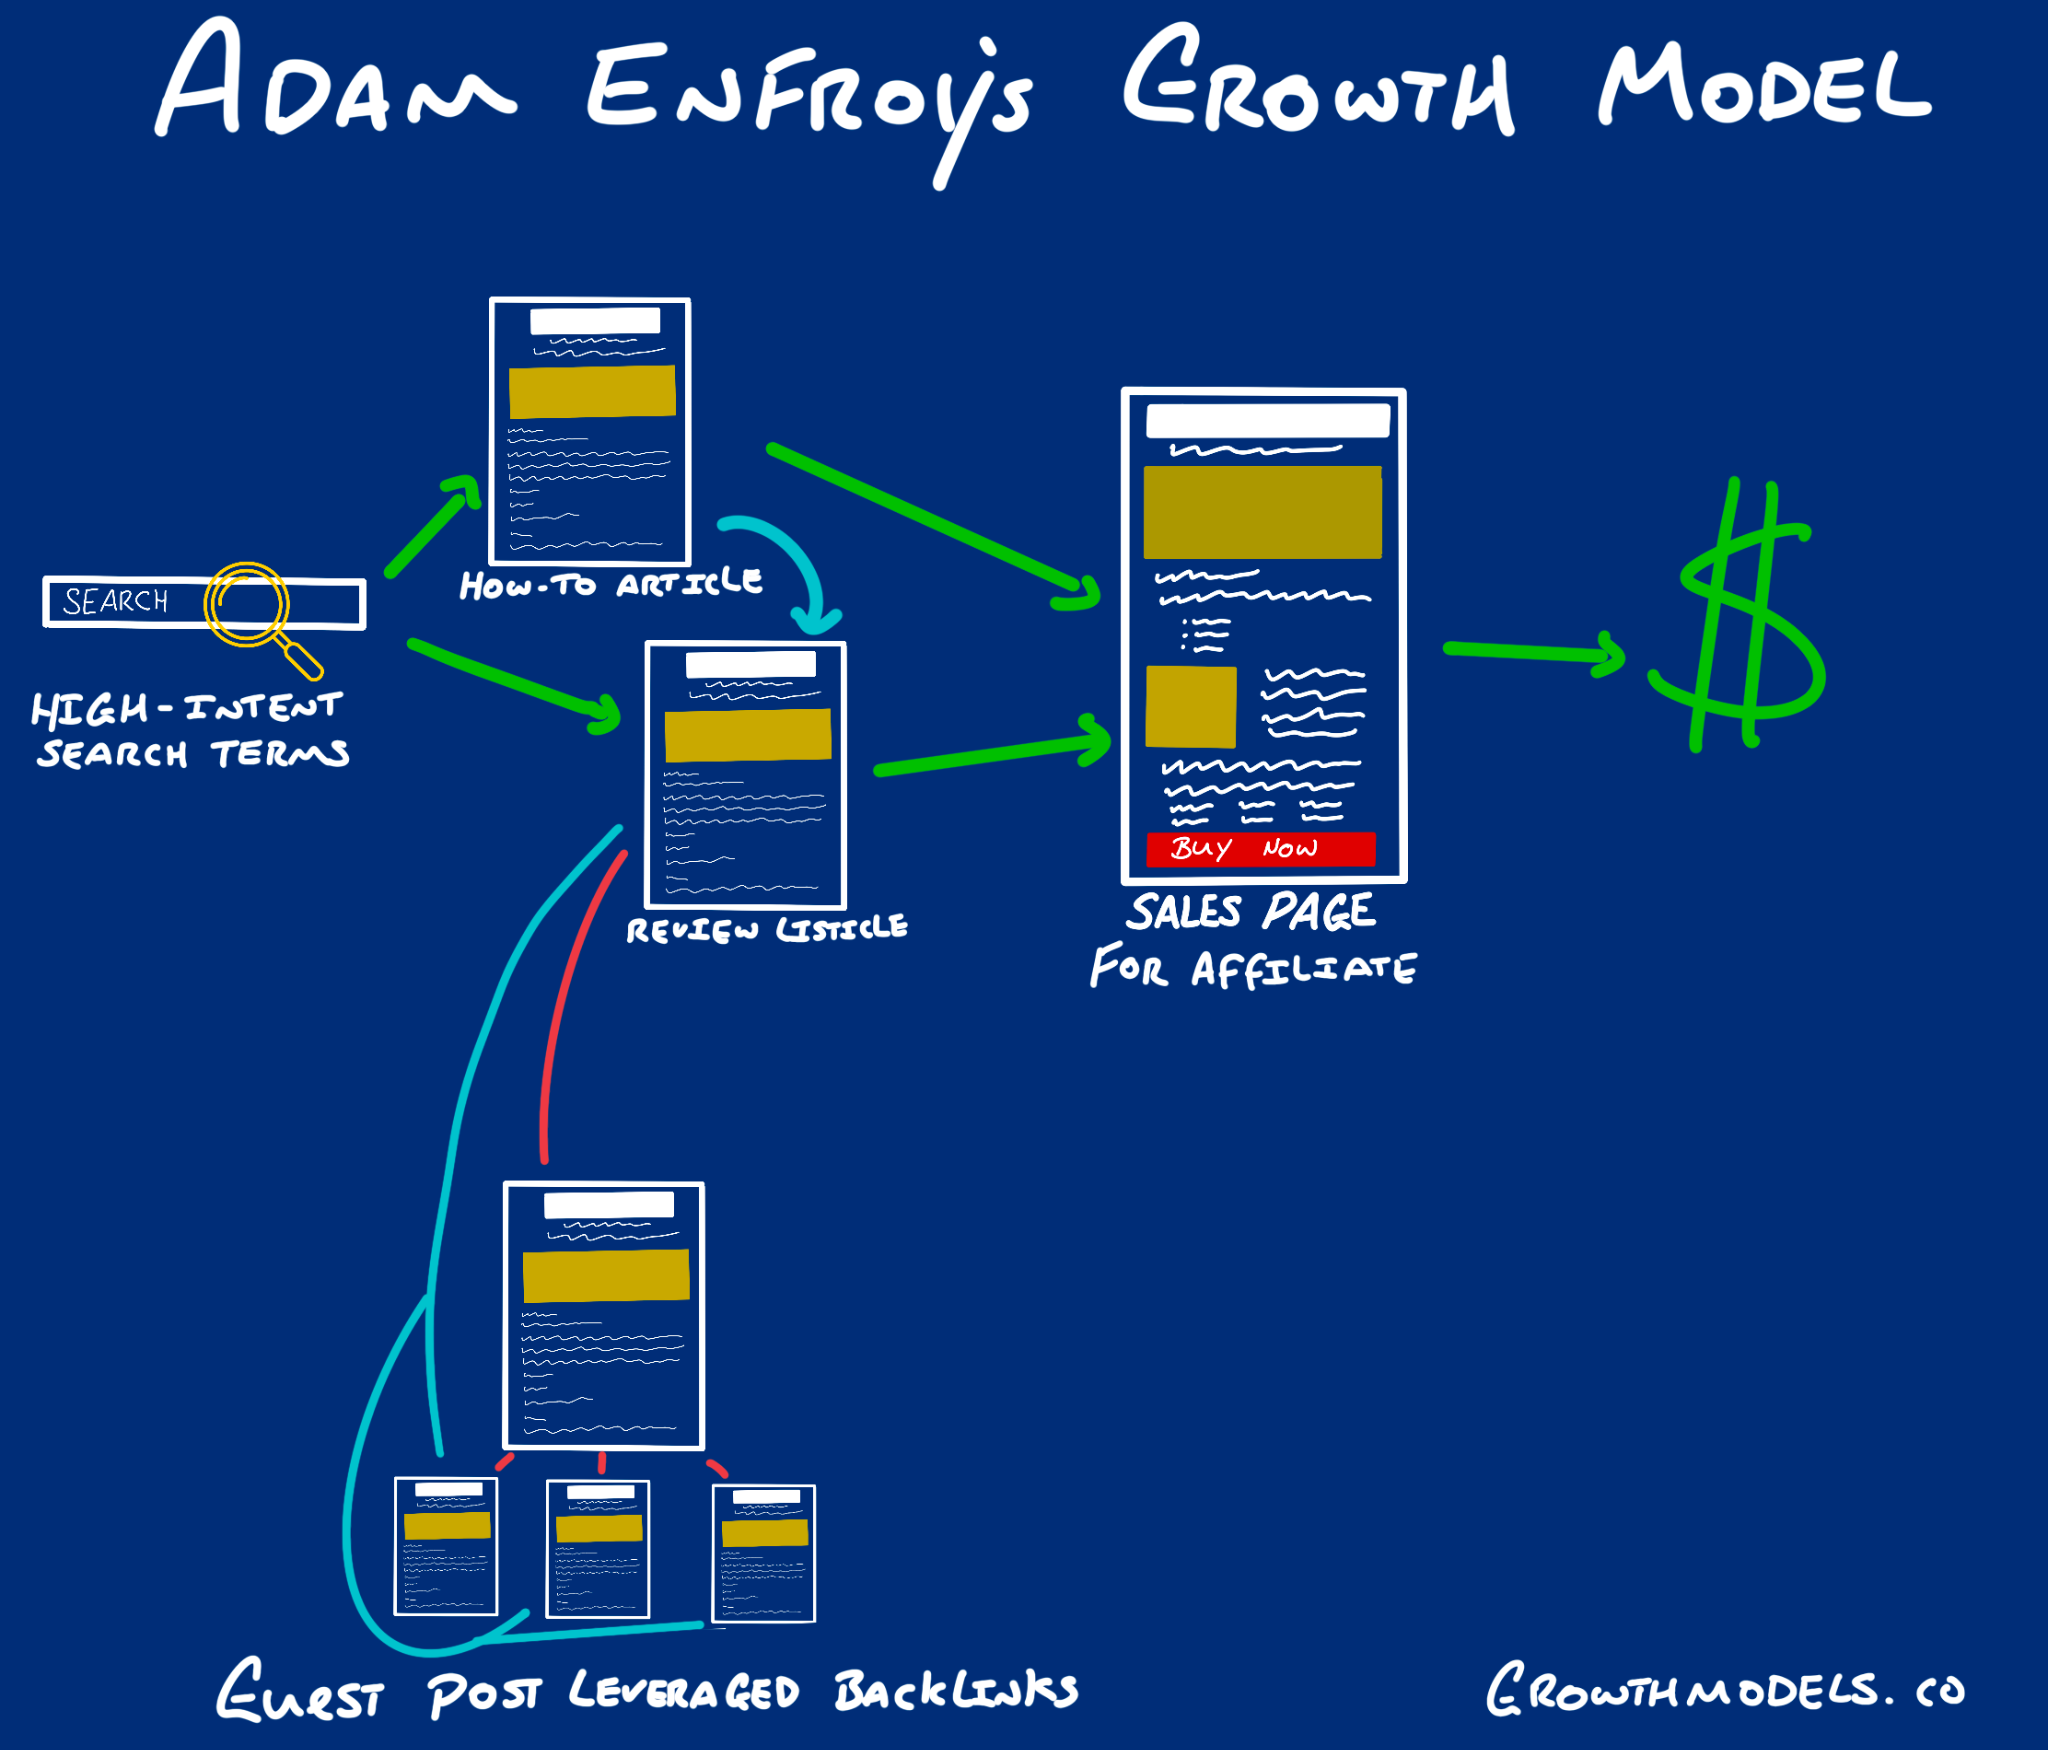 Adam enfroy growth model